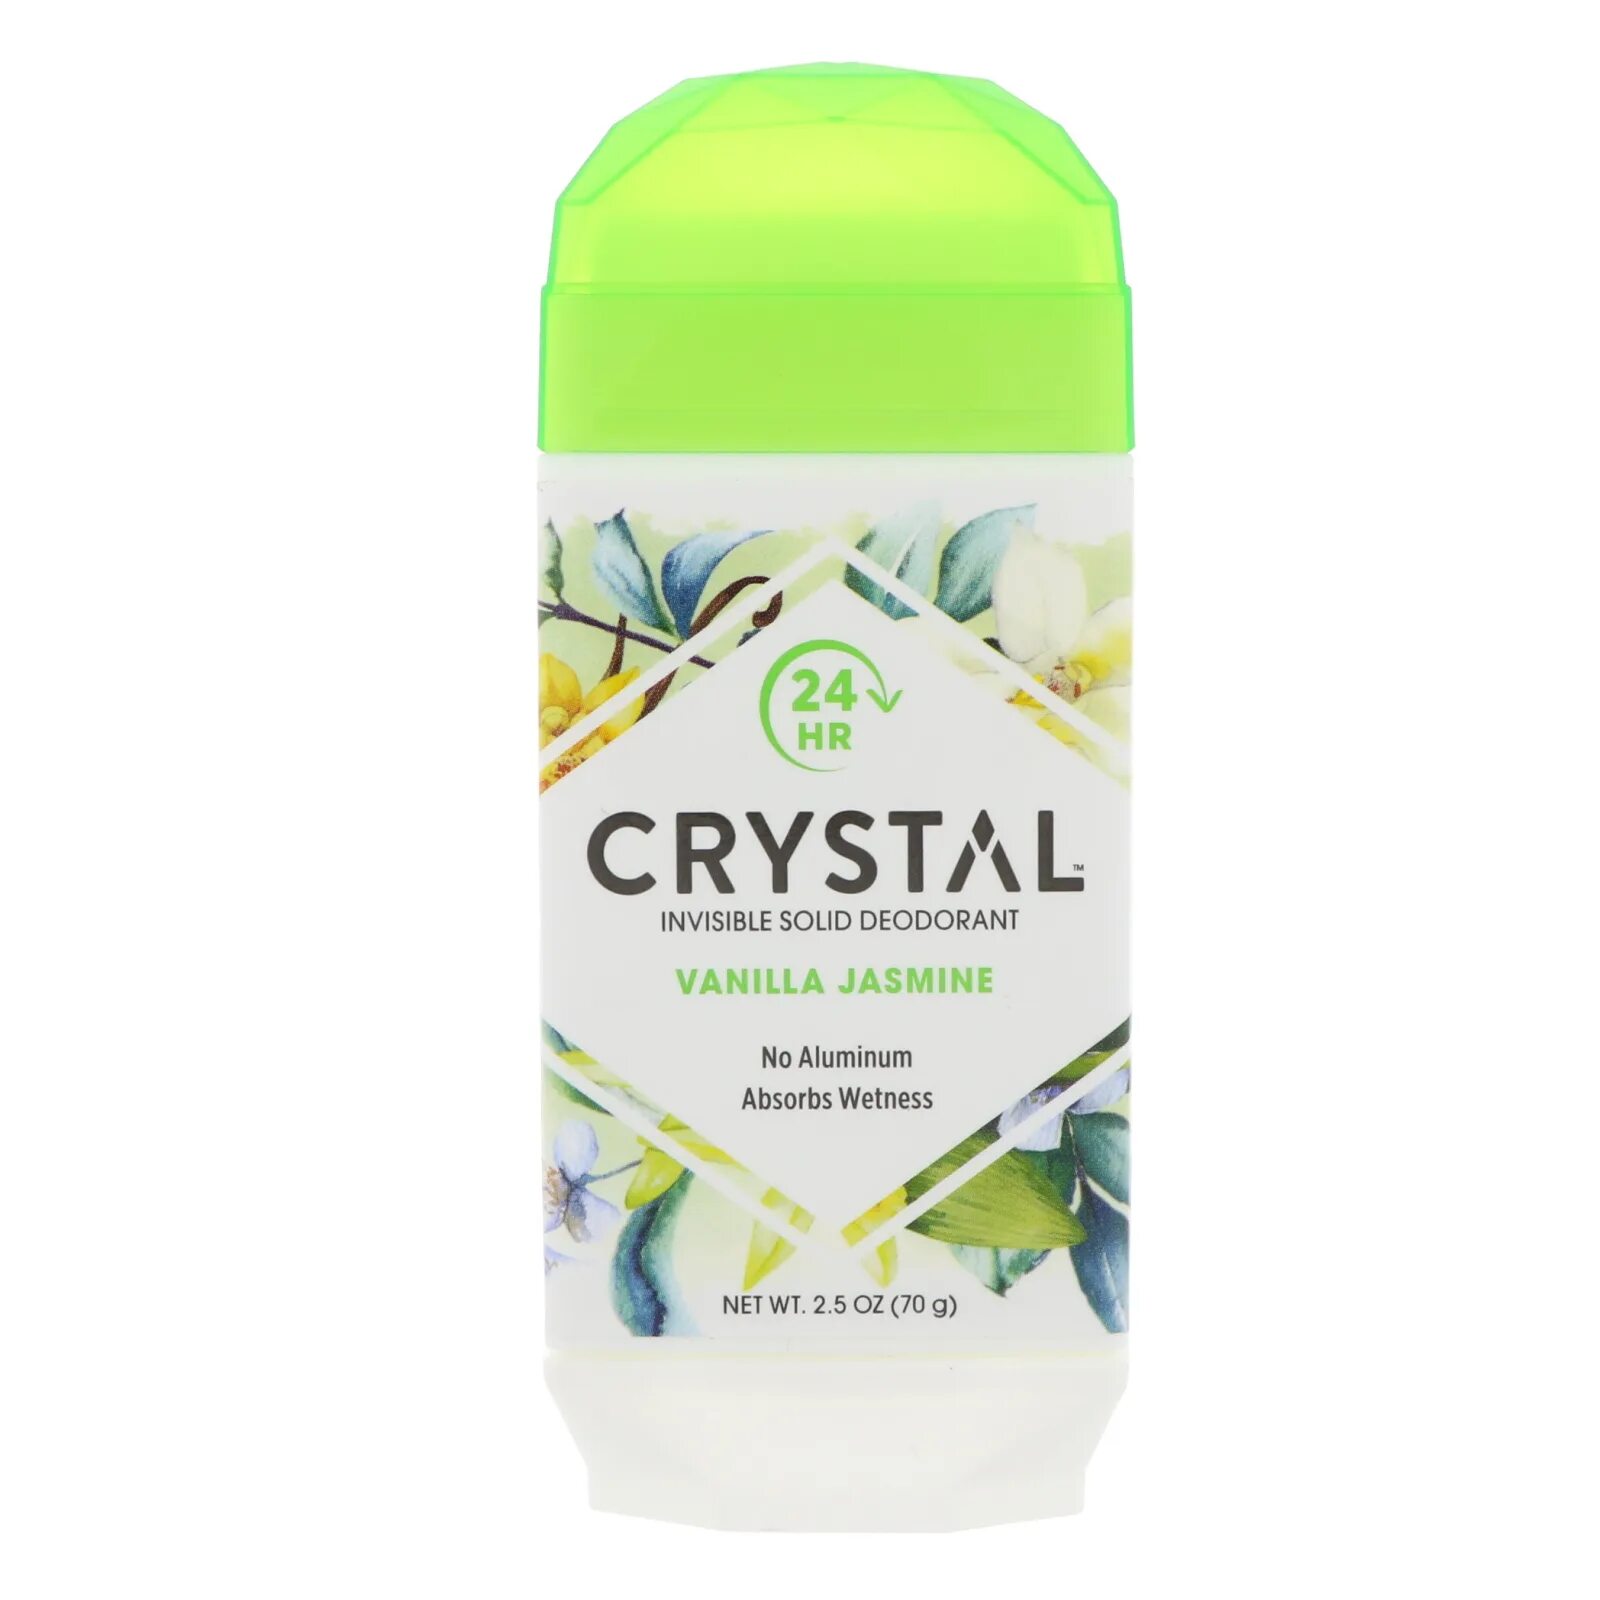 Твердый гель для душа. Дезодорант Crystal body Deodorant. Дезодорант Crystal Mineral-enriched. Кристал дезодорант Кристалл. Secret Jasmine дезодорант.